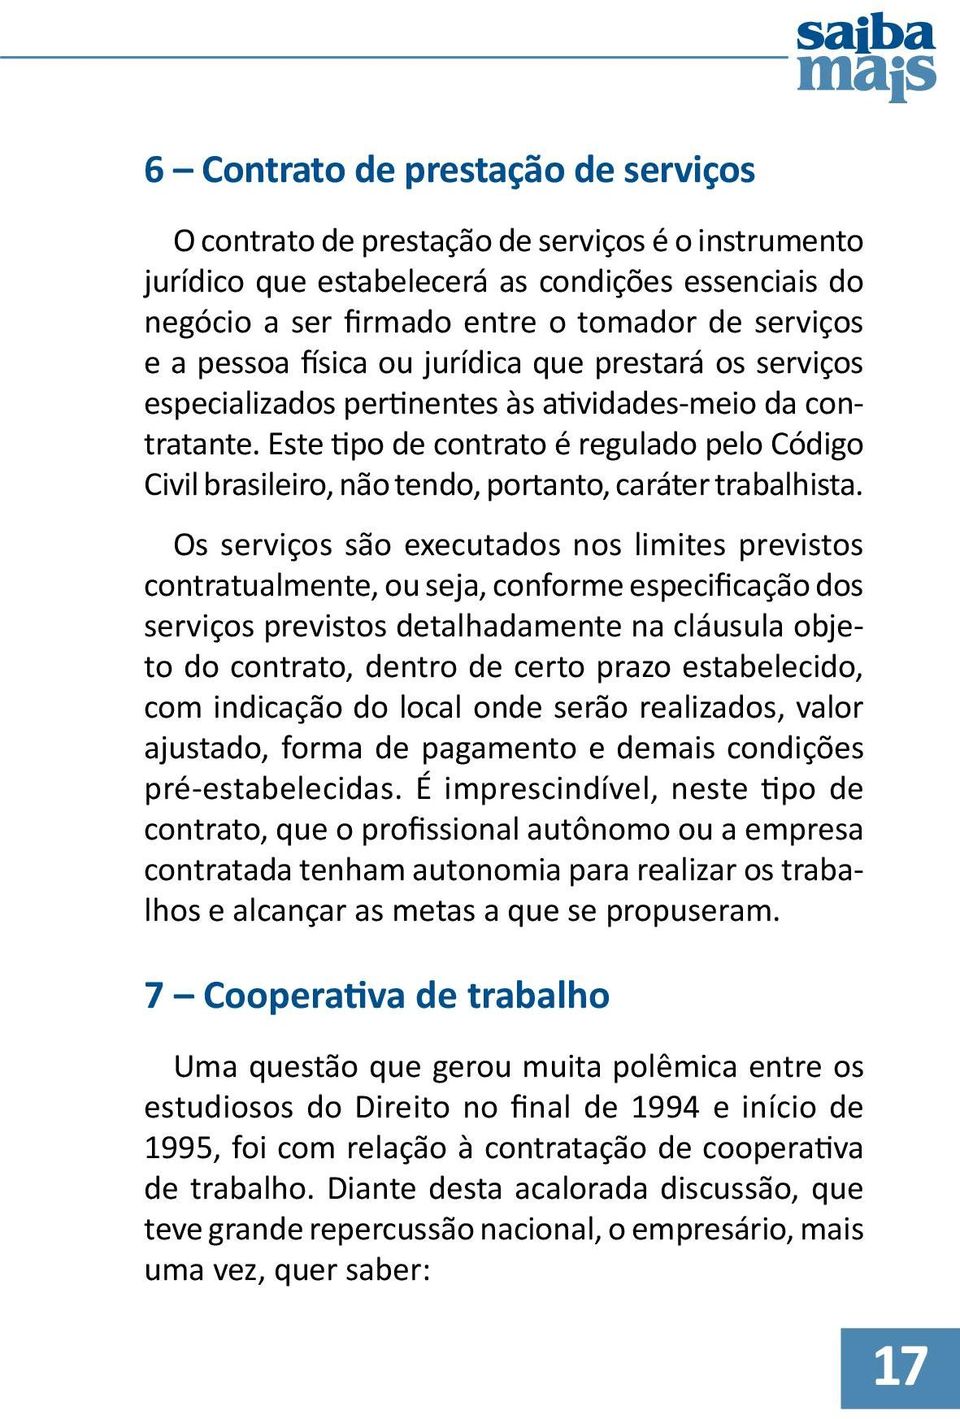 Este tipo de contrato é regulado pelo Código Civil brasileiro, não tendo, portanto, caráter trabalhista.